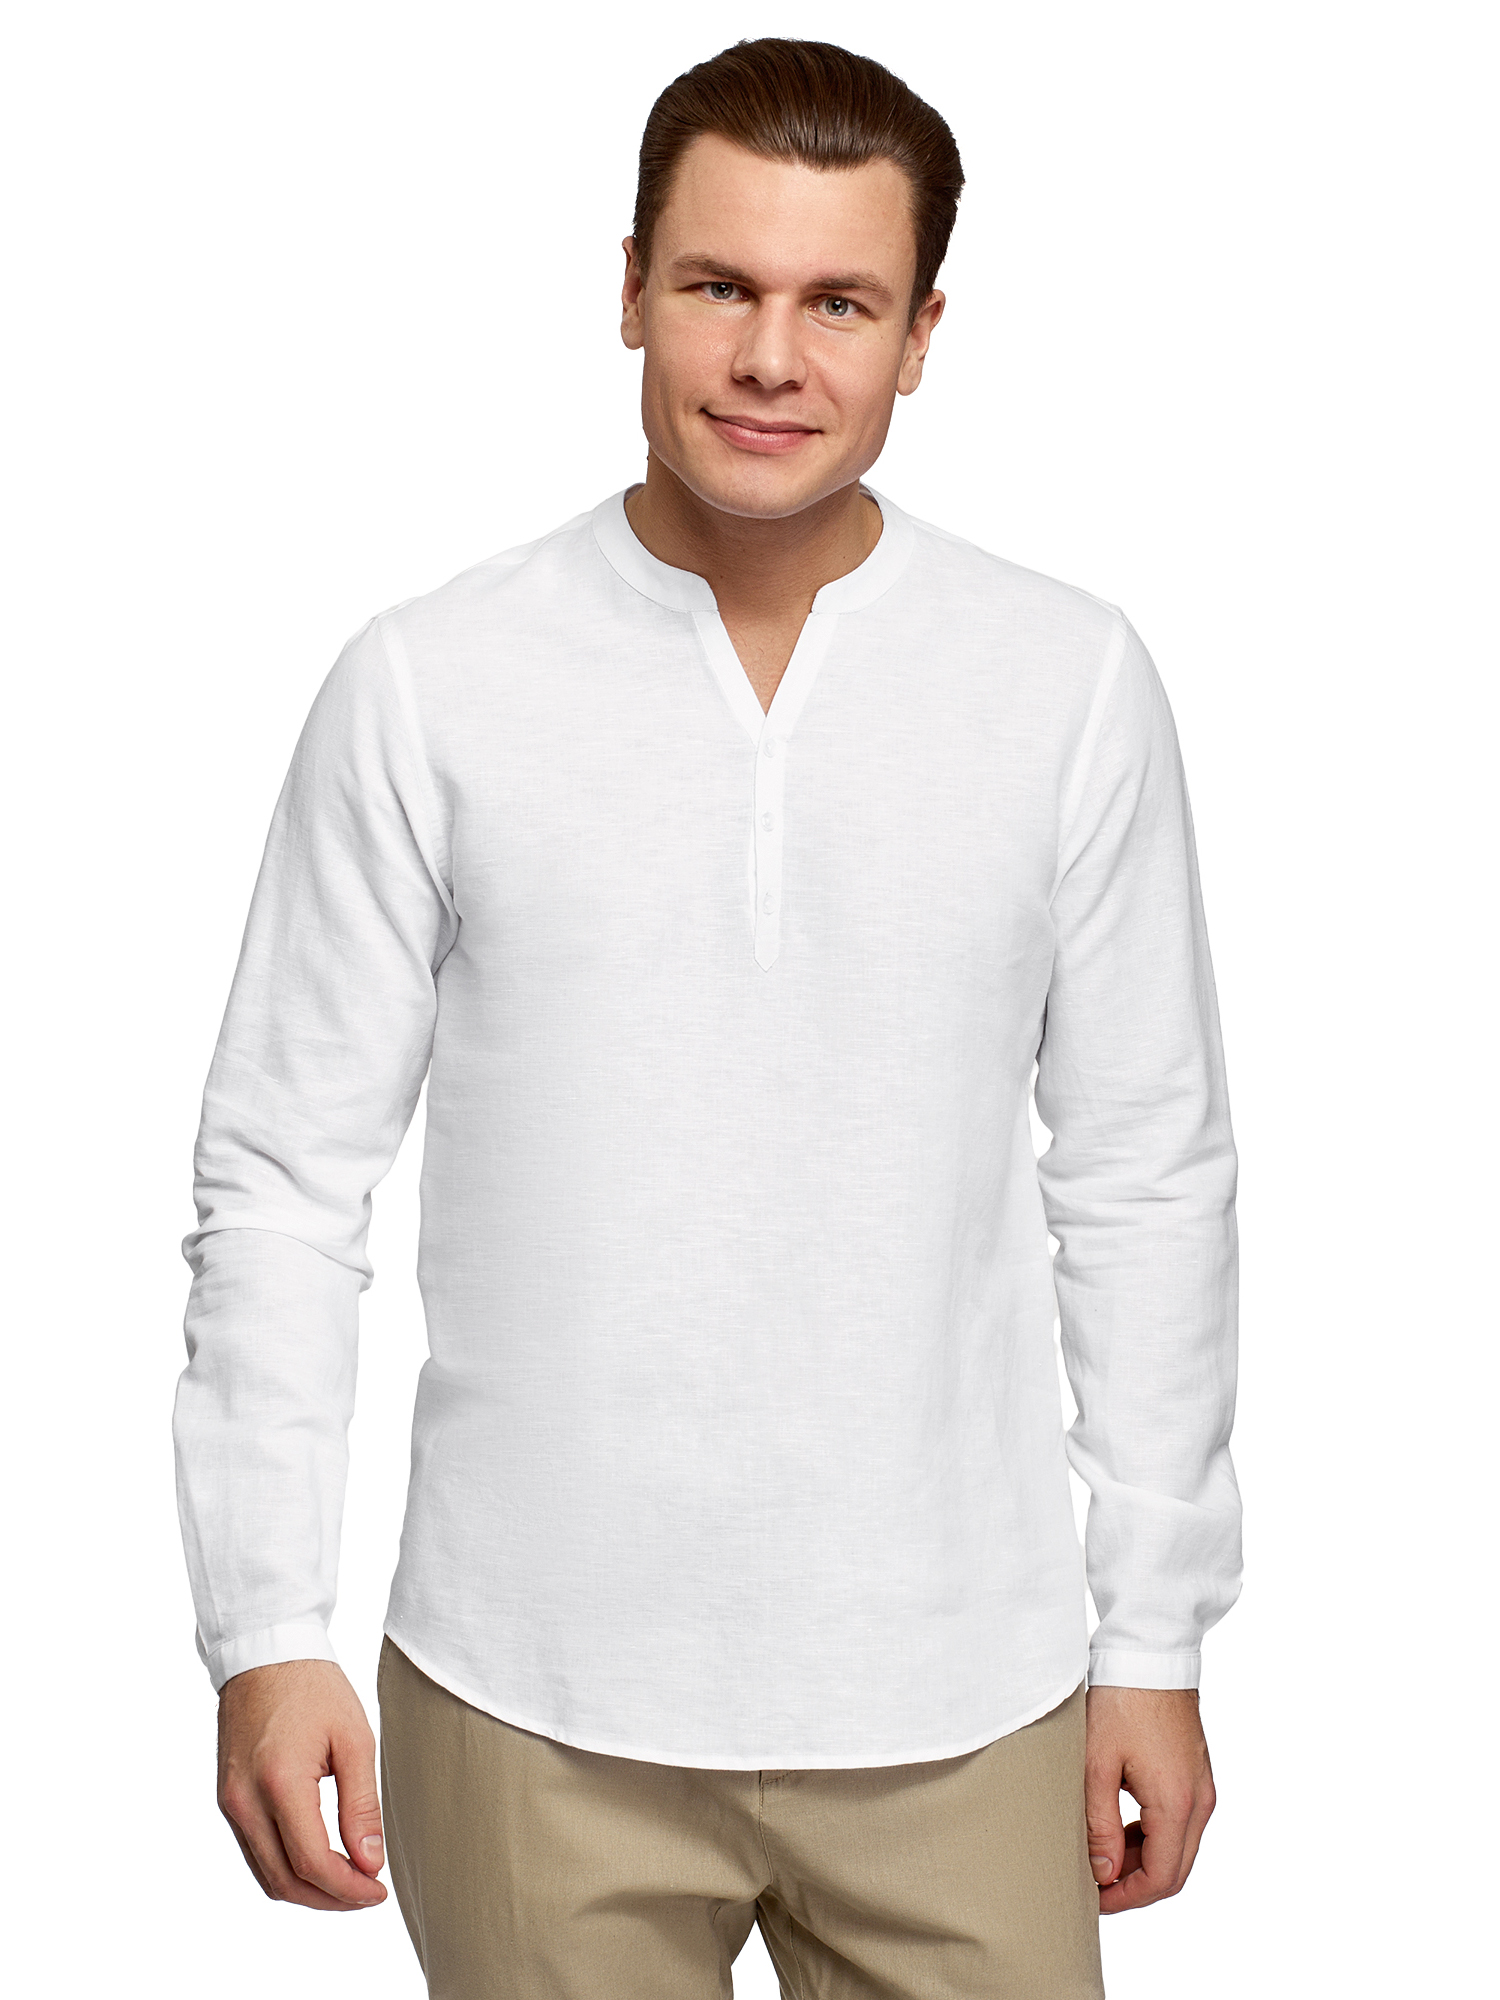 Рубашка мужская oodji 3B320002M-1 белая 2XL